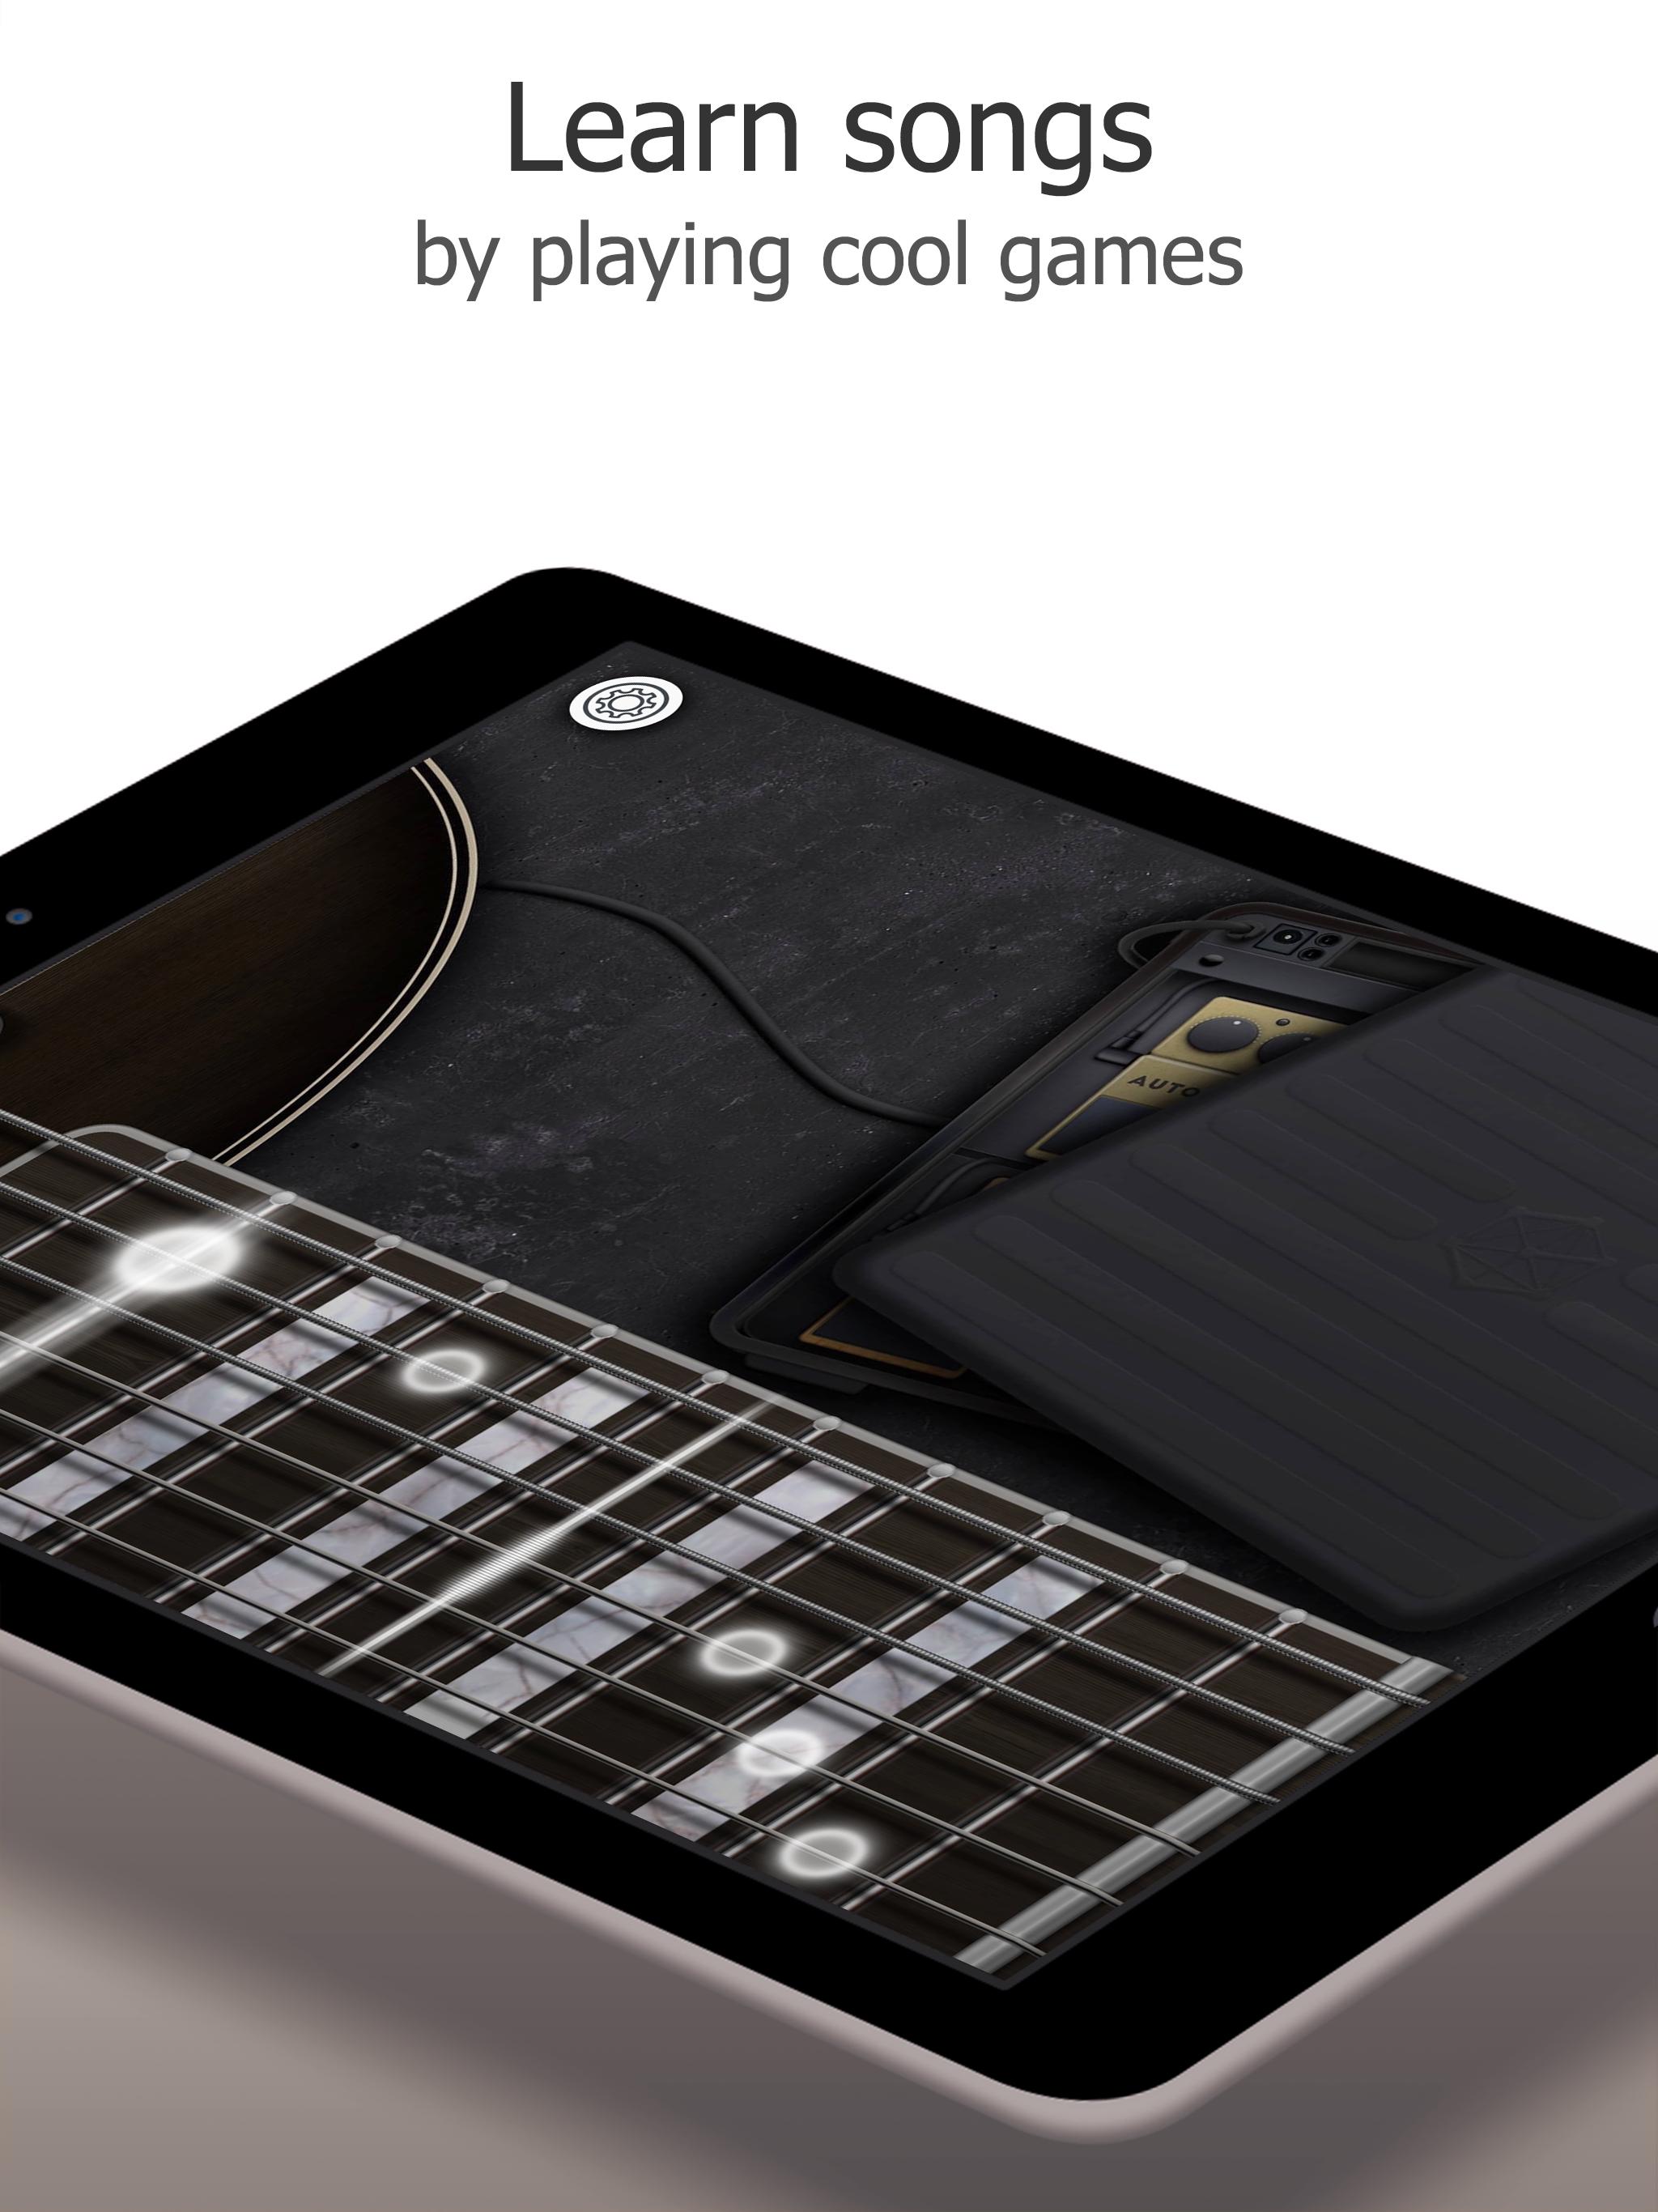 Real Guitar Free - Chords, Tabs & Simulator Games 3.31.0 Screenshot 15